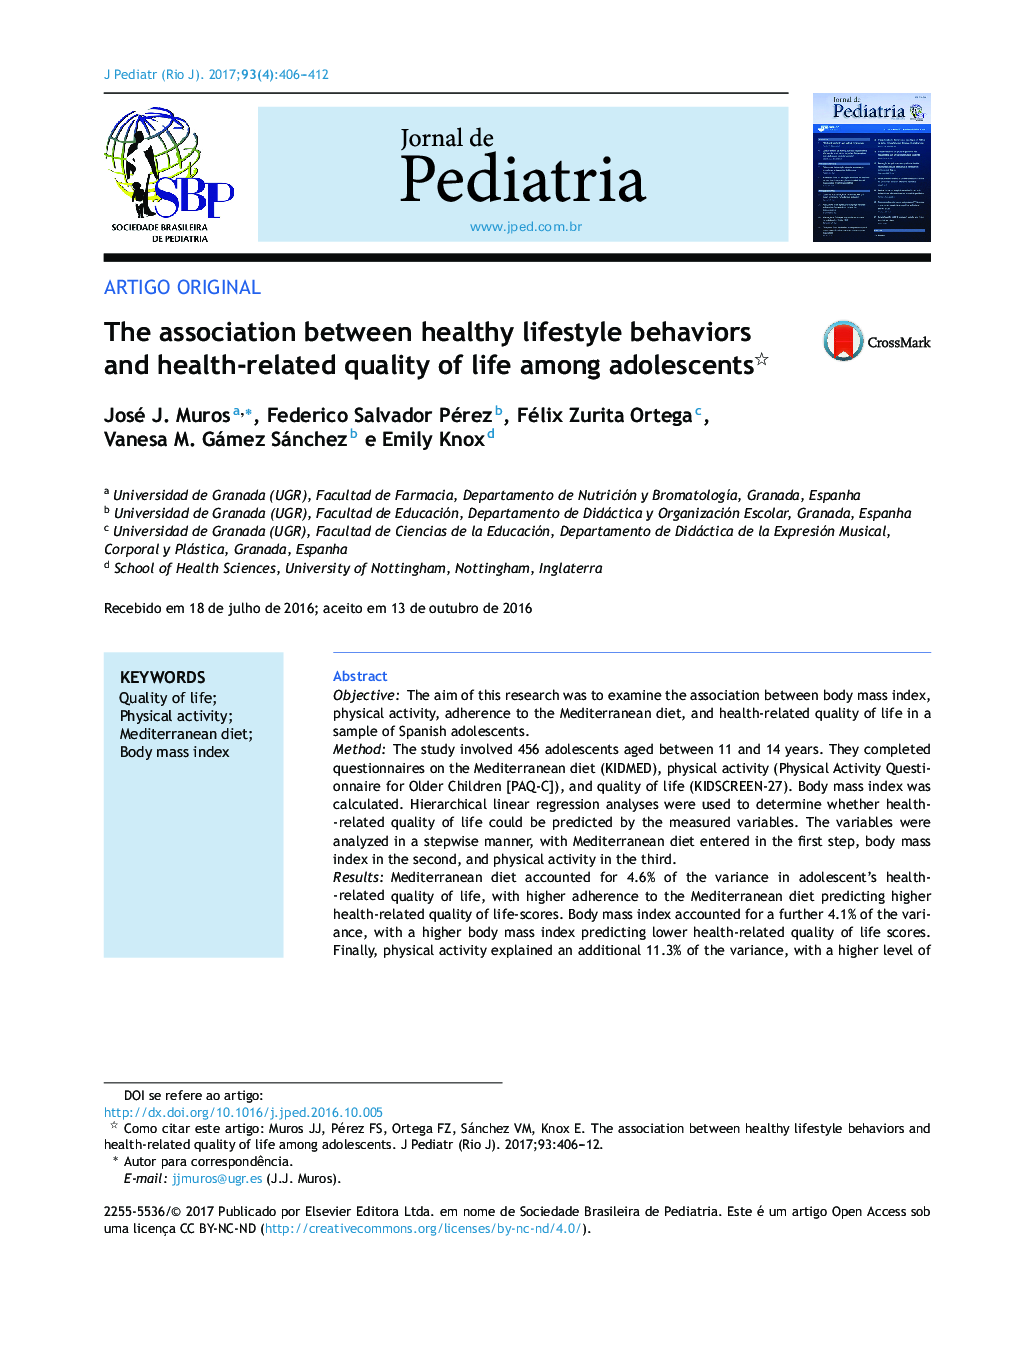 ارتباط بین رفتارهای سبک زندگی سالم و کیفیت زندگی مرتبط با سلامت نوجوانان 